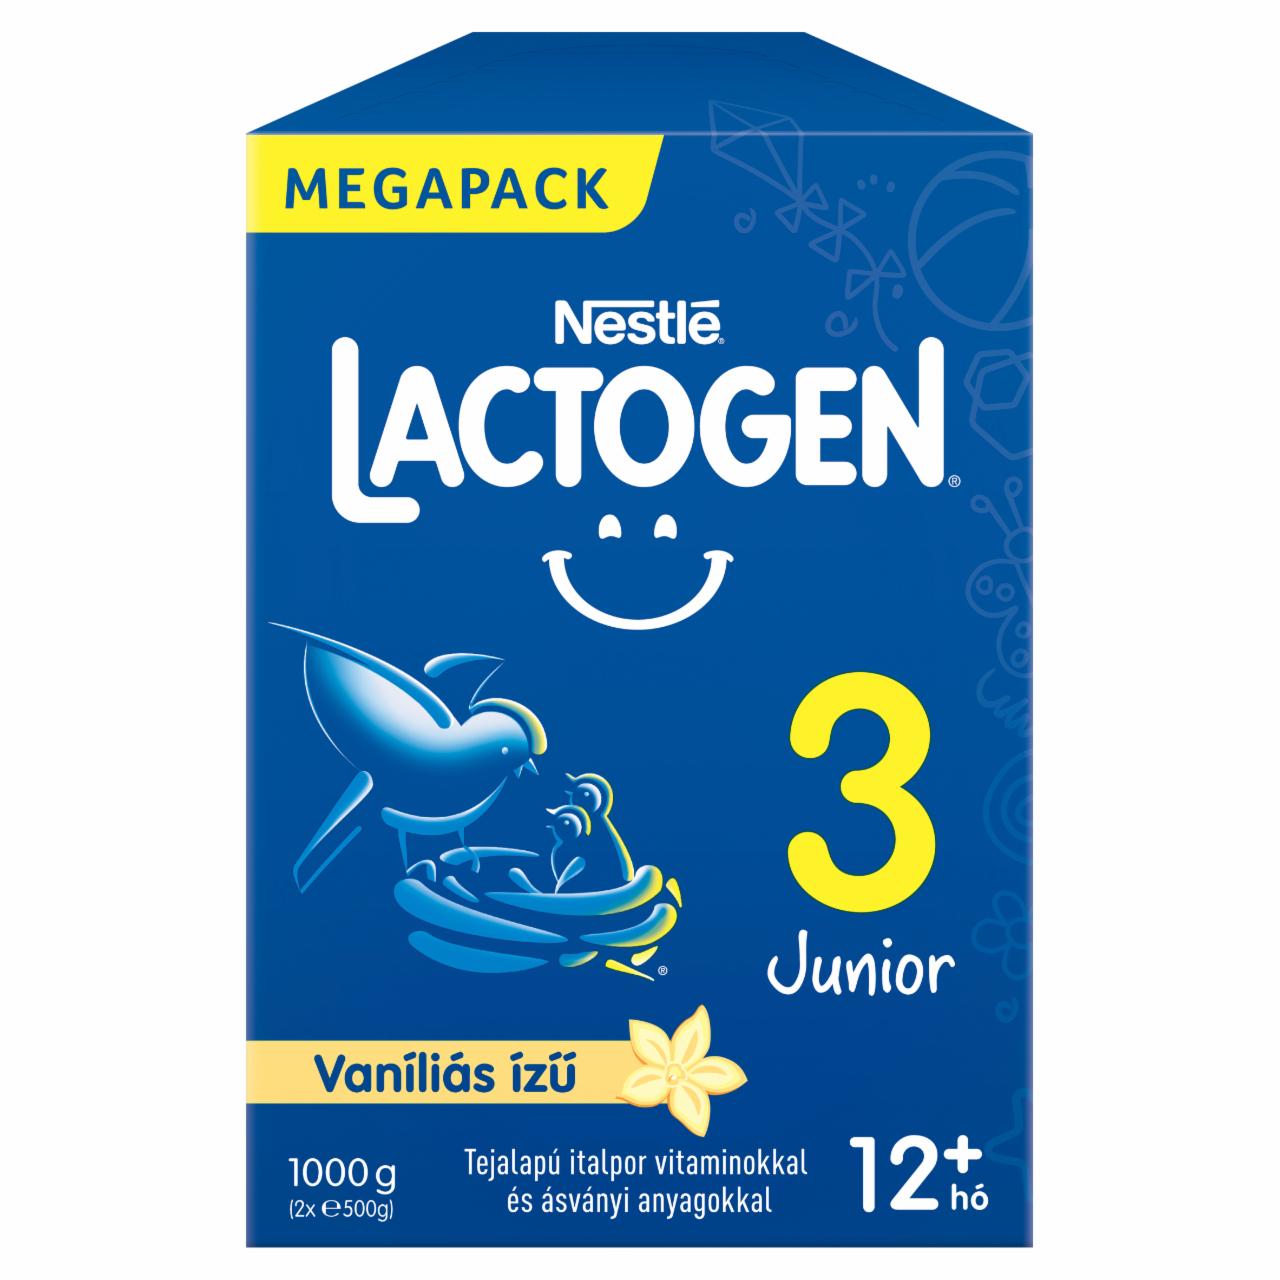 Képek - Nestlé Lactogen 3 Junior vaníliás ízű tejalapú italpor 12+ hó 2 x 500 g (1000 g)